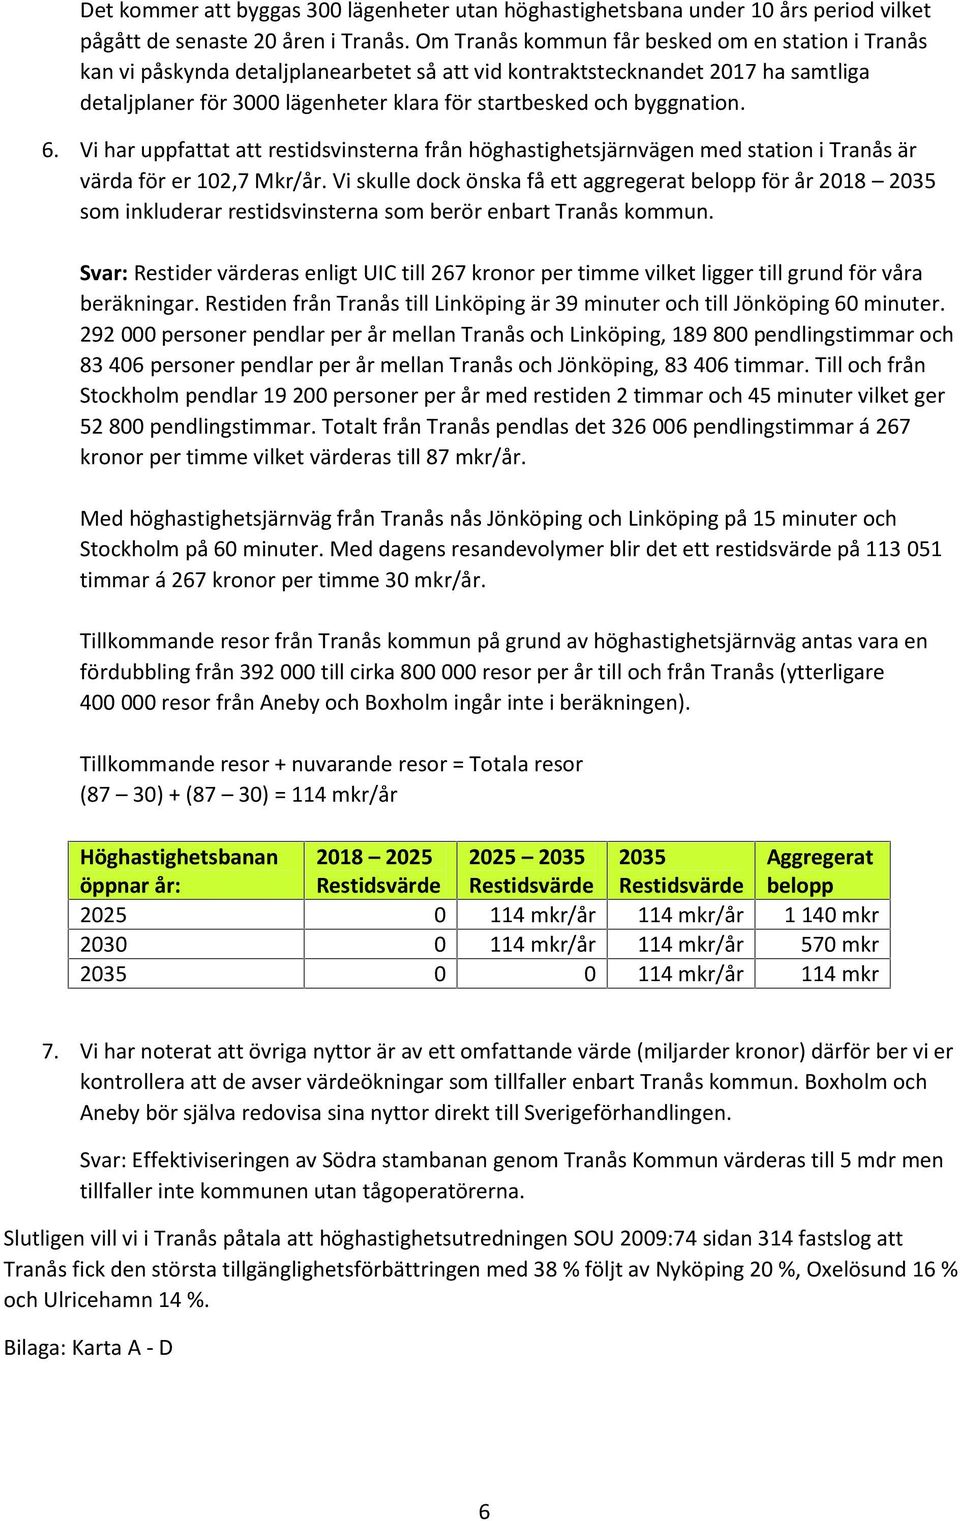 6. Vi har uppfattat att restidsvinsterna från höghastighetsjärnvägen med station i Tranås är värda för er 12,7 Mkr/år.